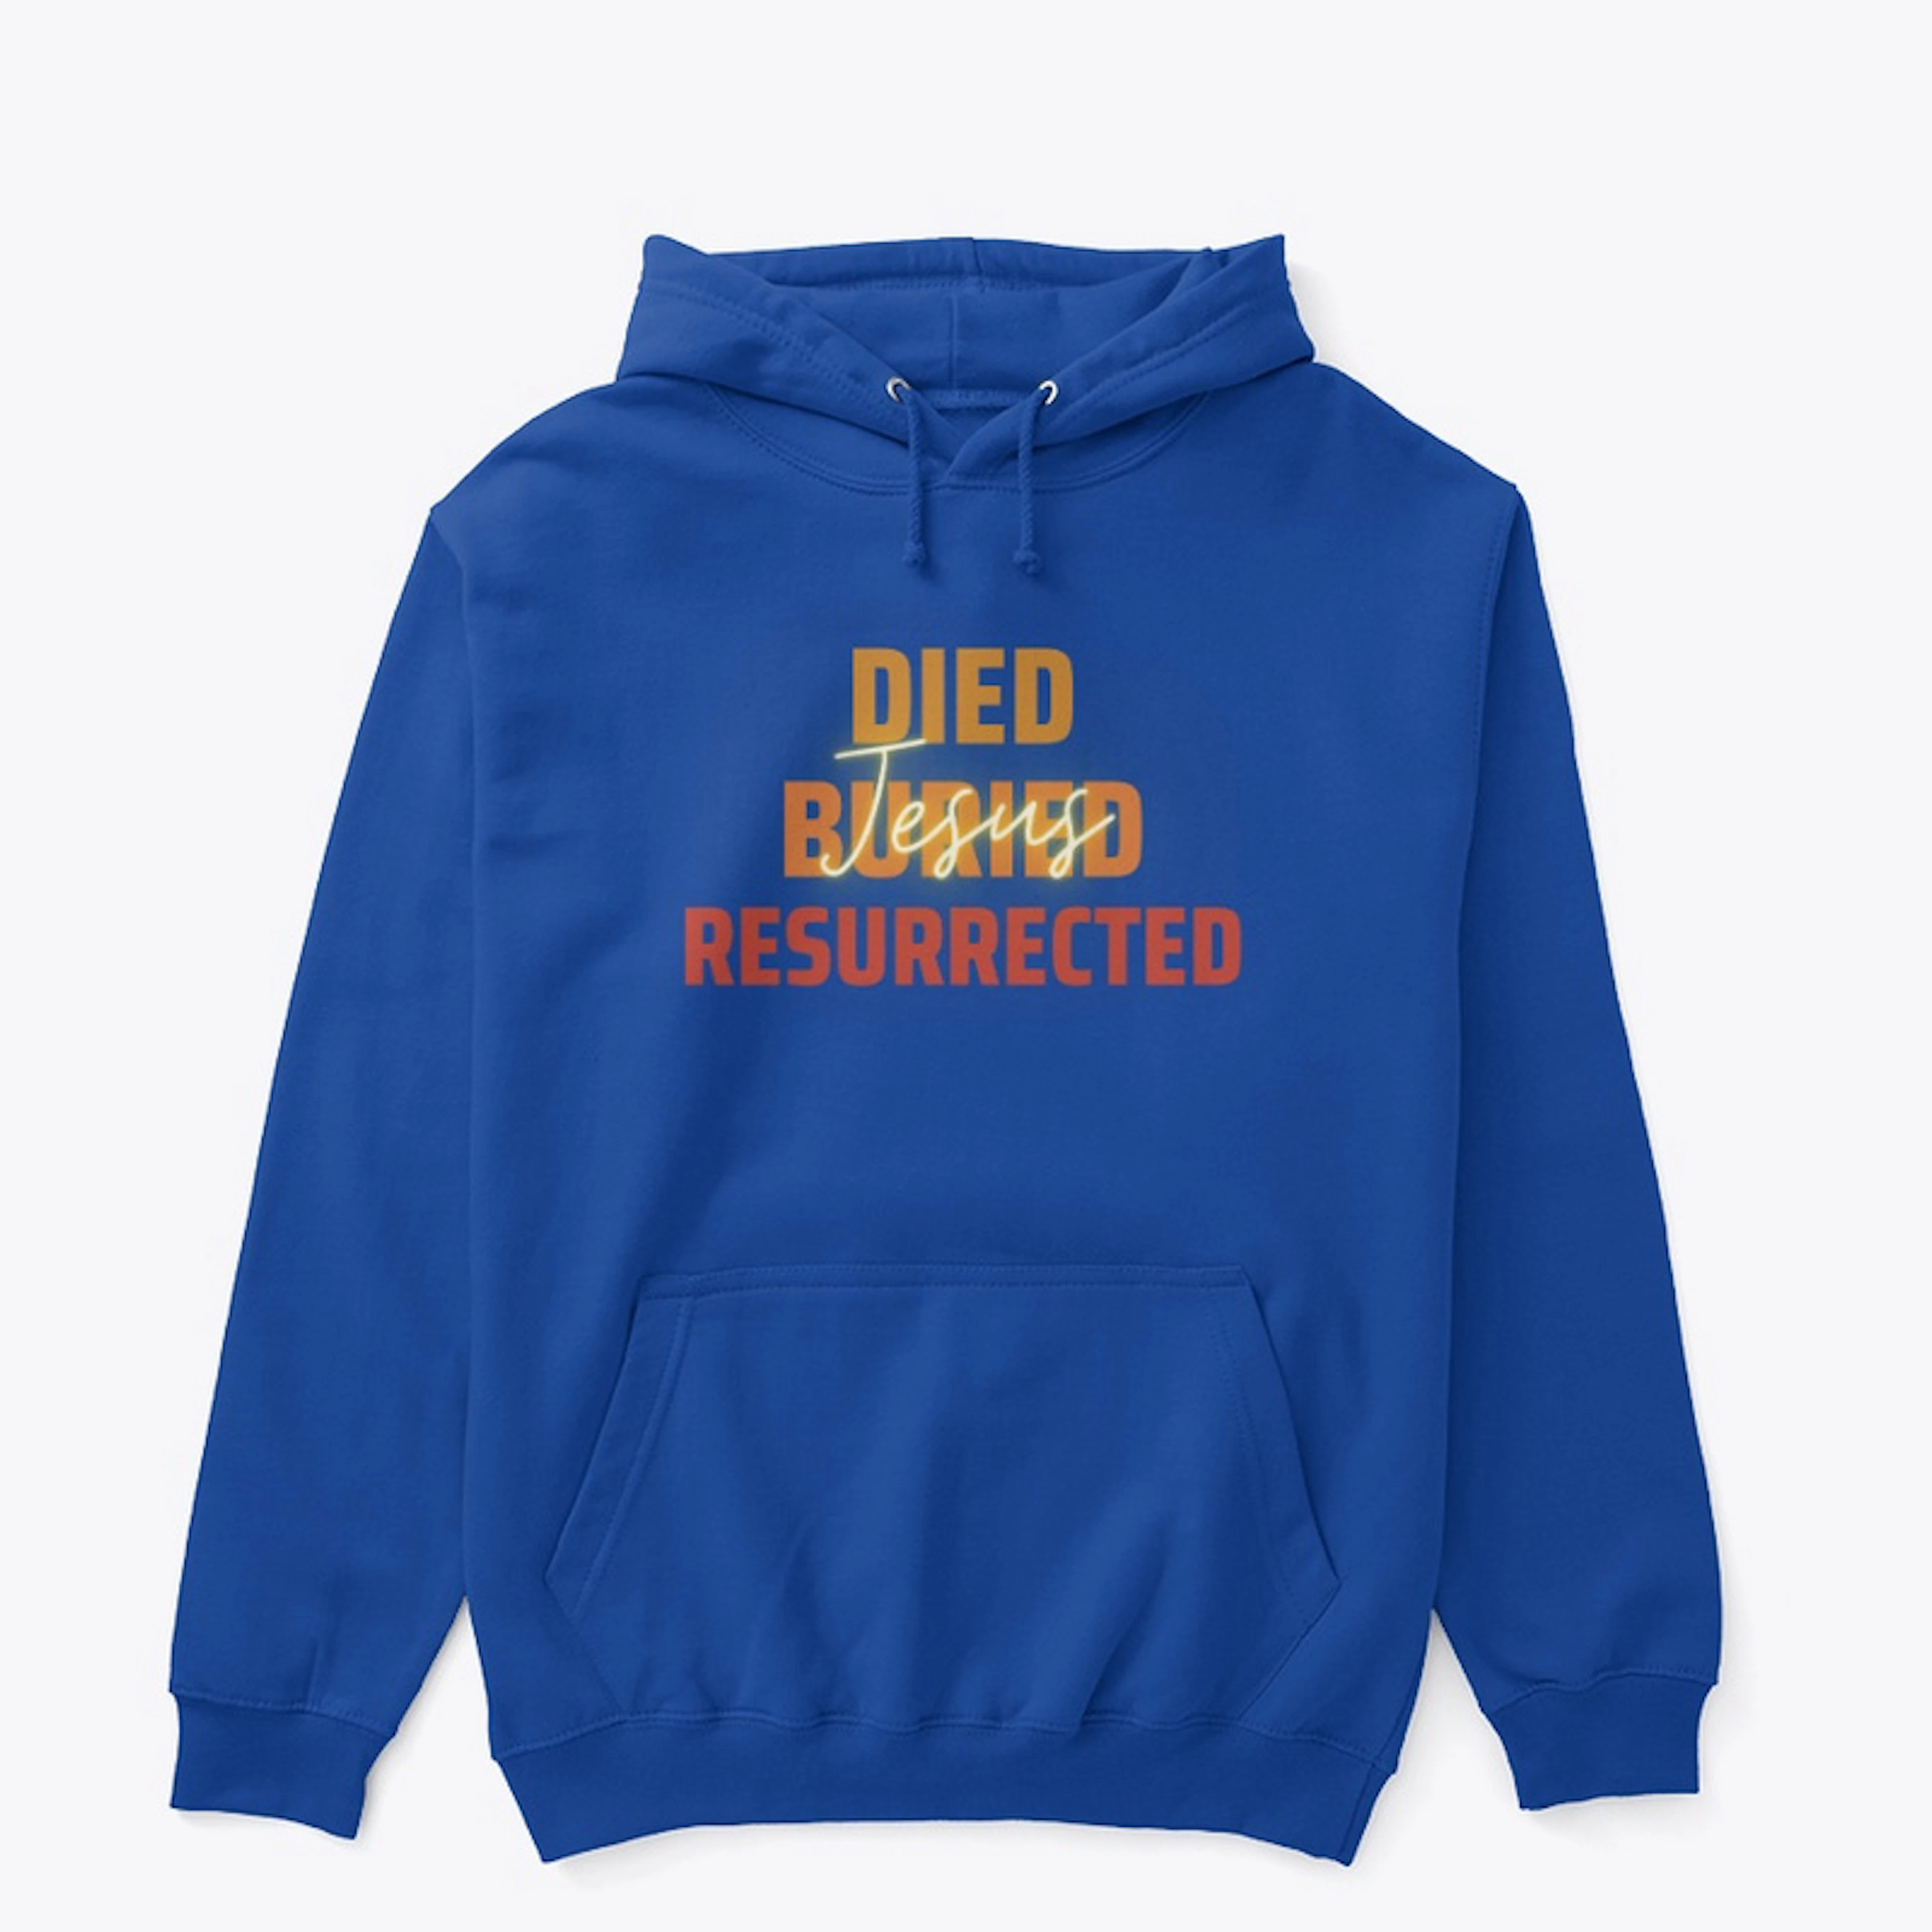 Jesus Died, Buried, Resurrected 